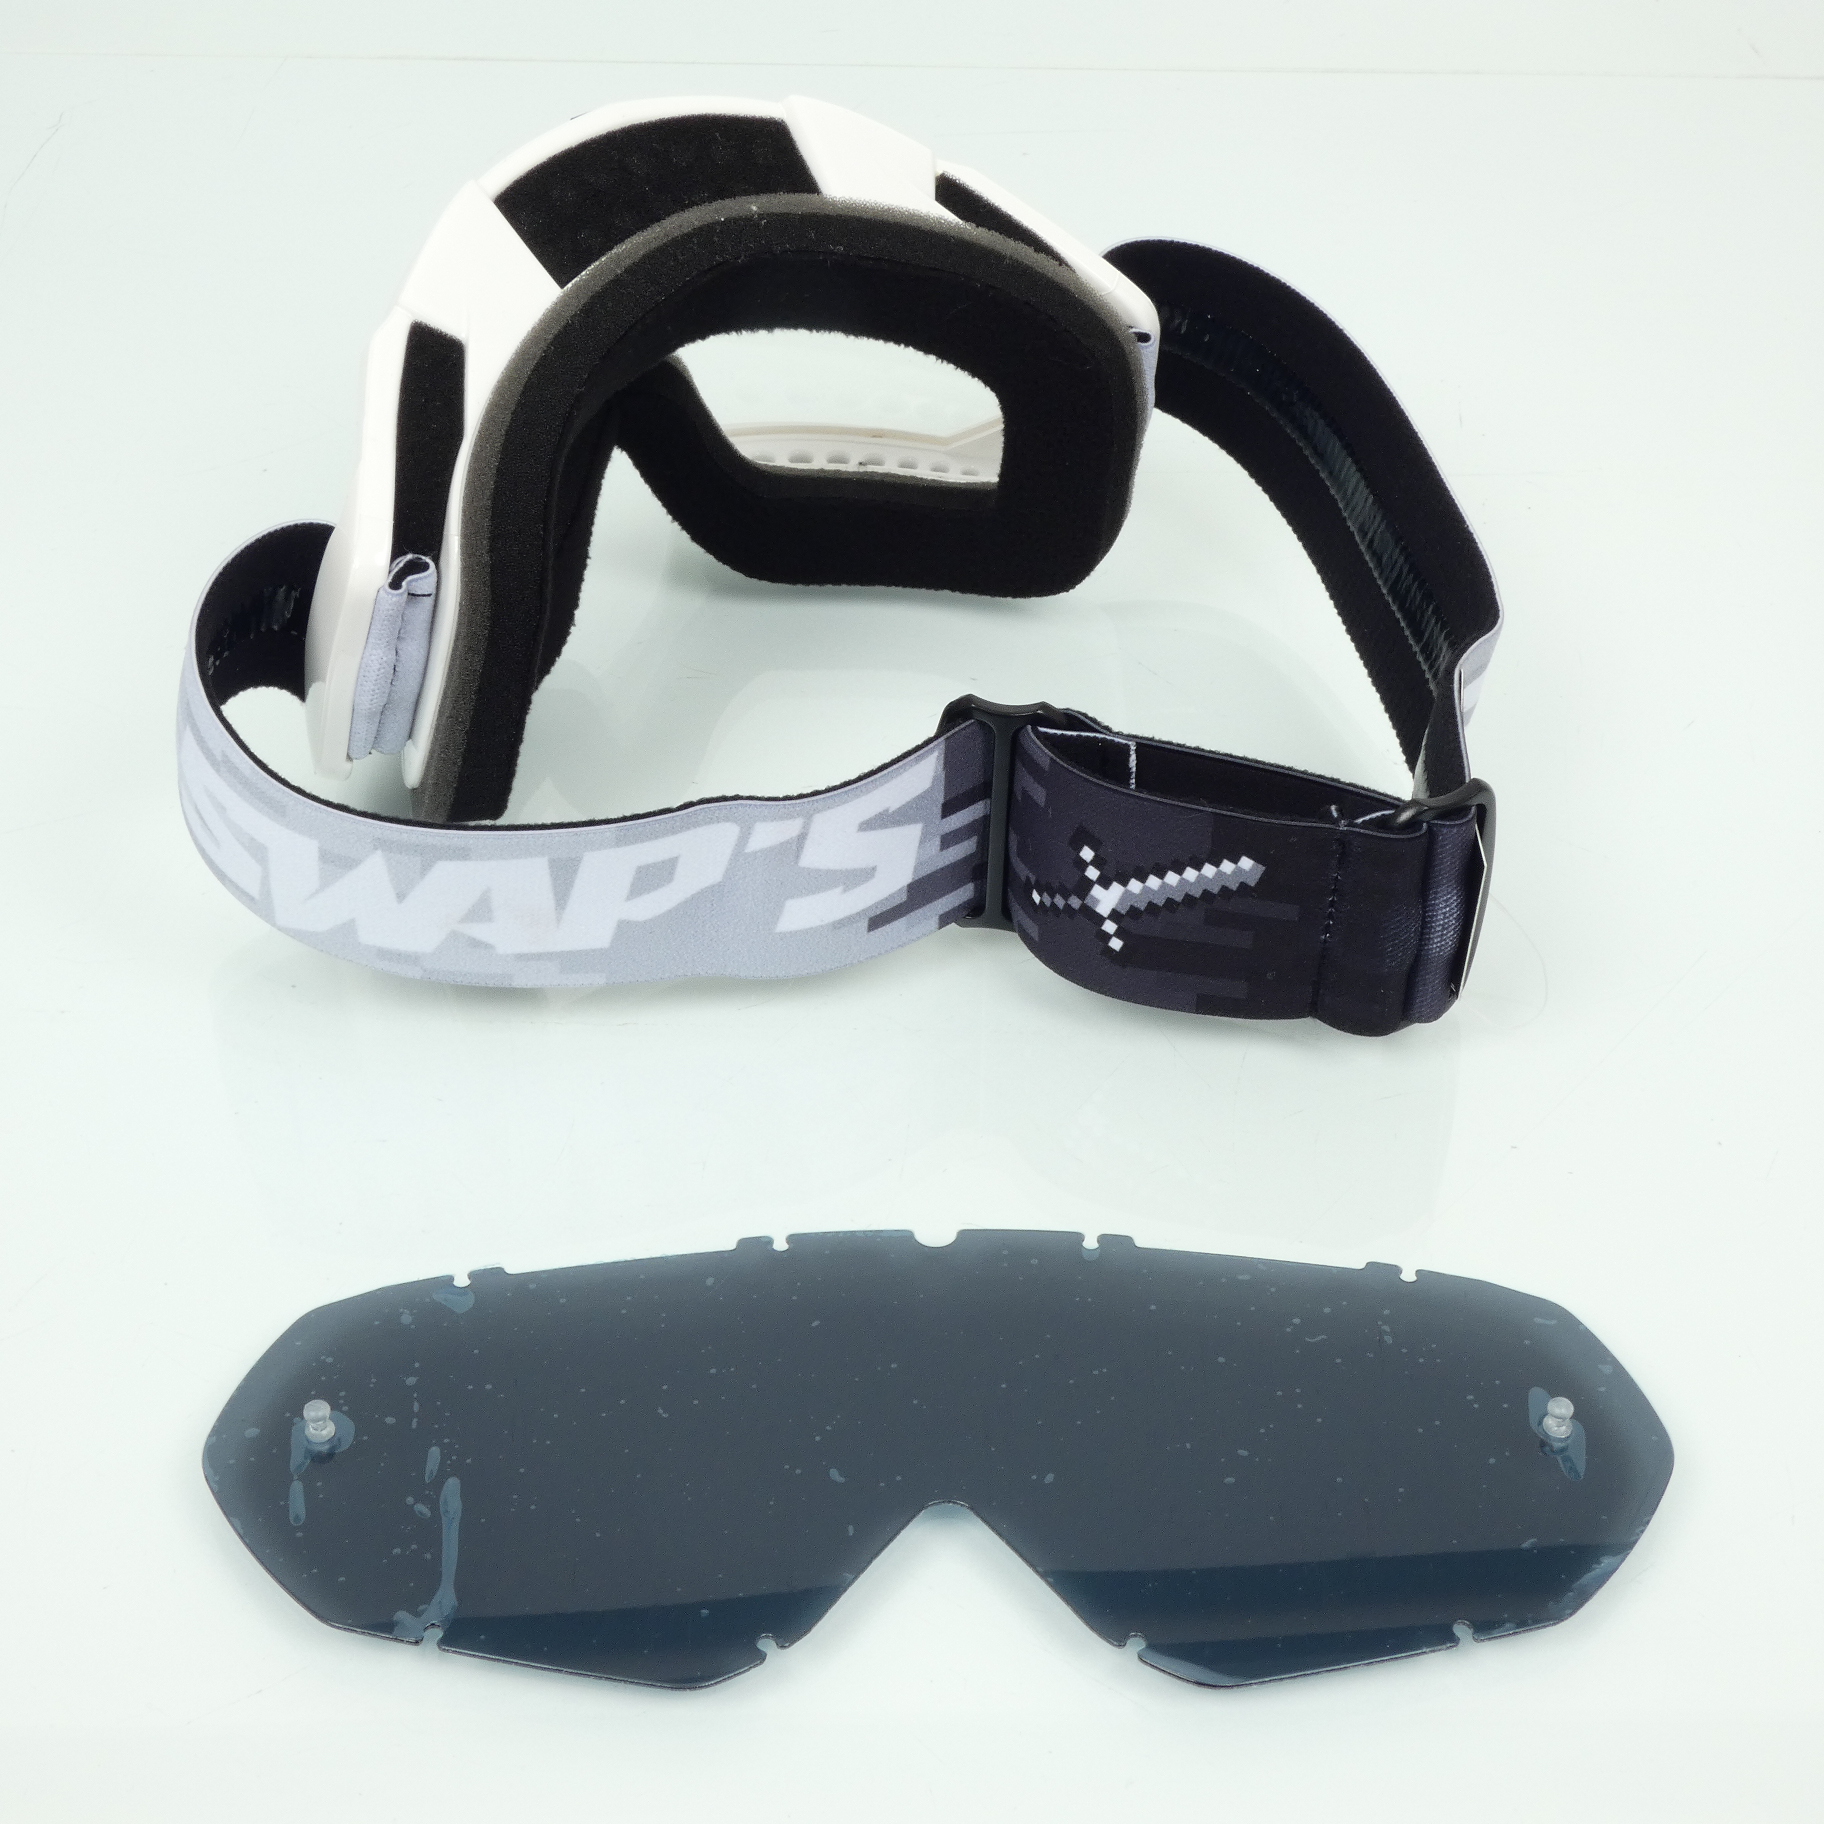 Masque lunette cross Swaps Pixel blanc + écran teinté pour moto supermotard Neuf